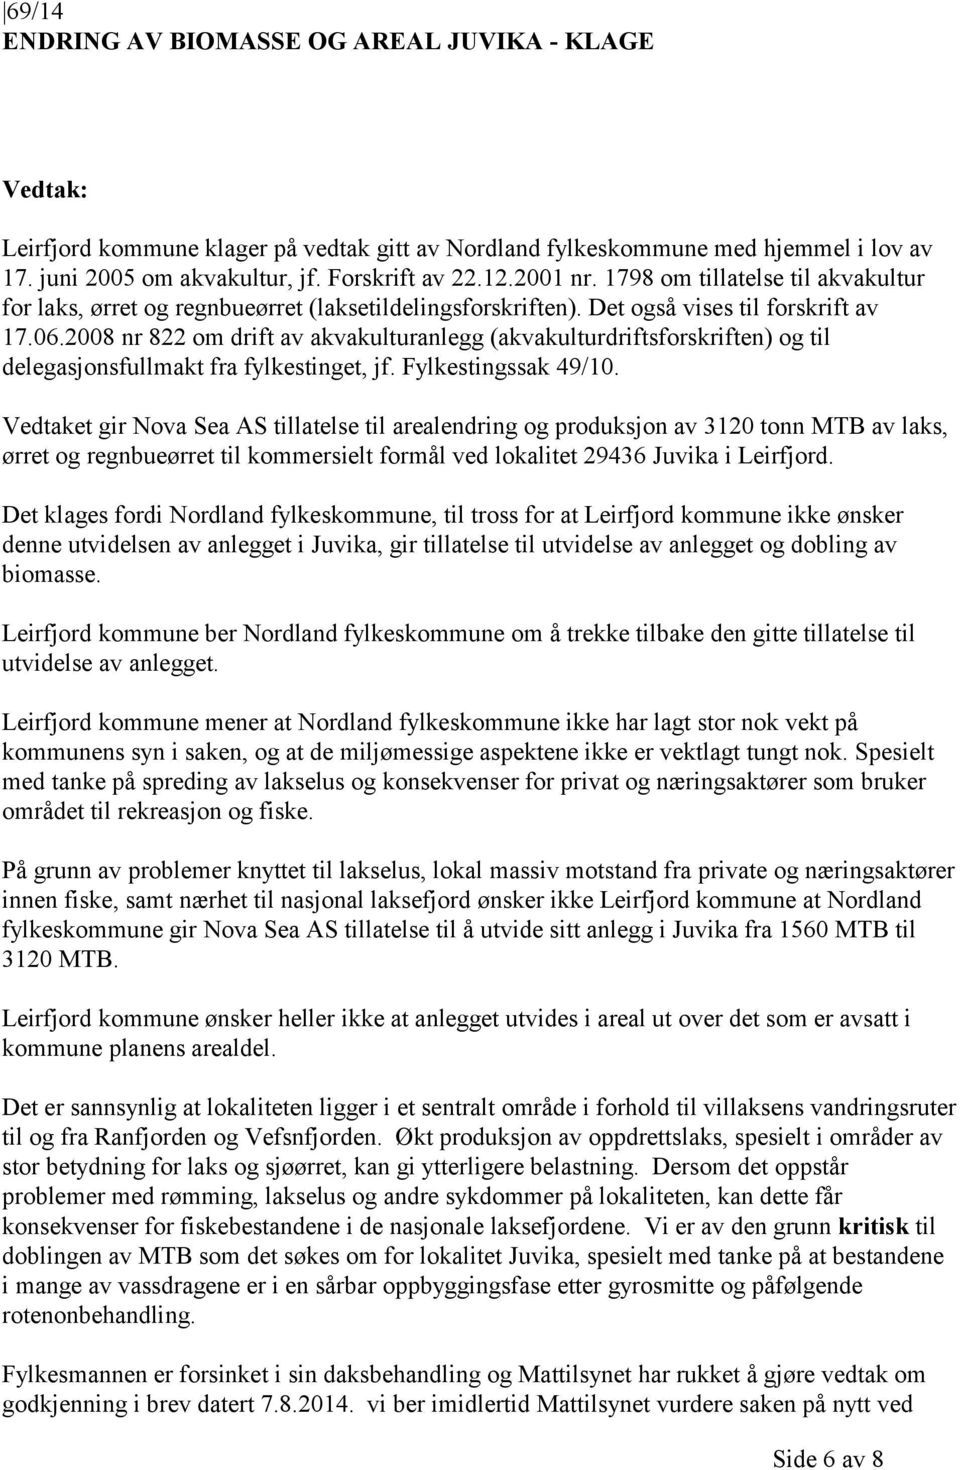 2008 nr 822 om drift av akvakulturanlegg (akvakulturdriftsforskriften) og til delegasjonsfullmakt fra fylkestinget, jf. Fylkestingssak 49/10.